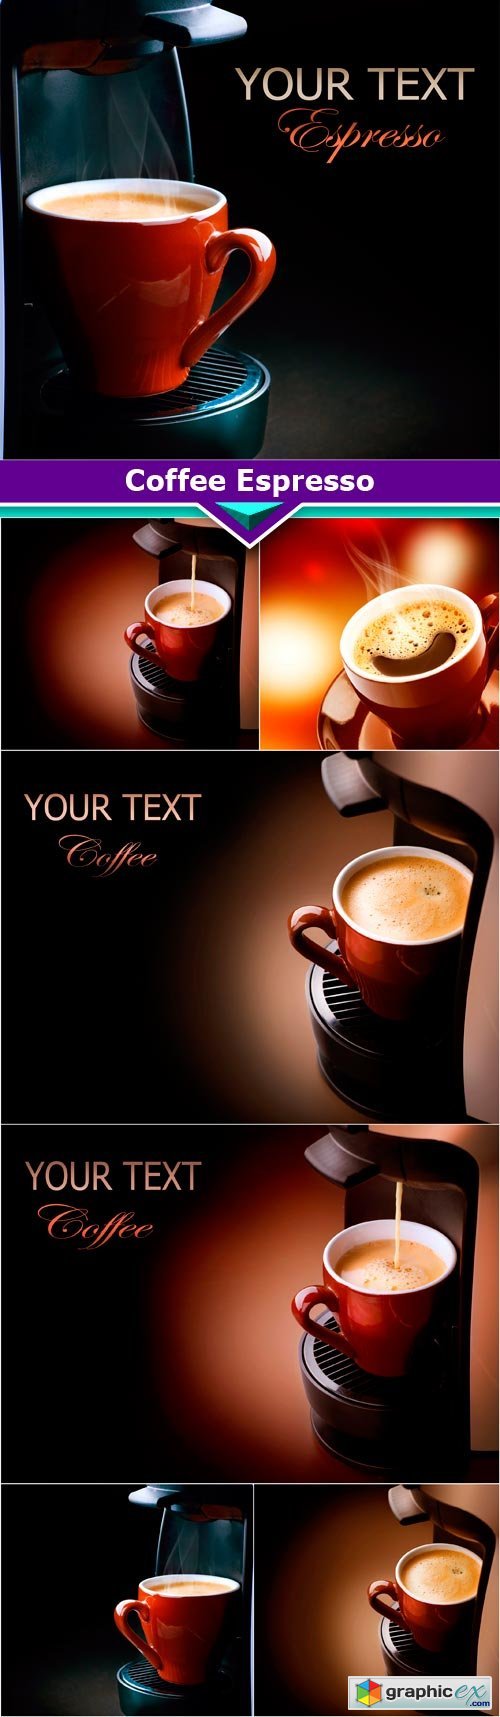 Coffee Espresso 7x JPEG